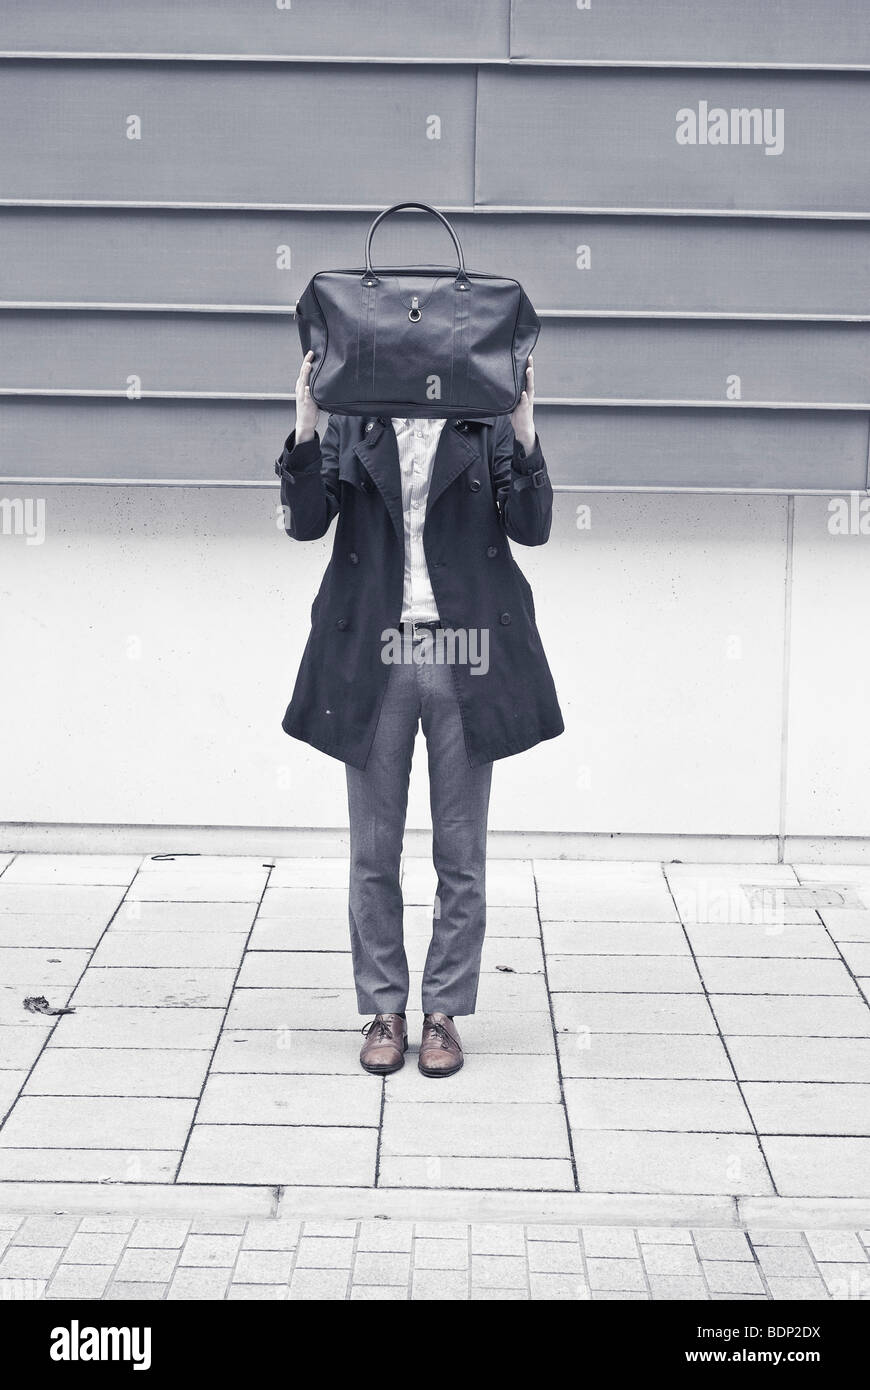 Un homme debout sur une rue de se cacher derrière un sac Banque D'Images